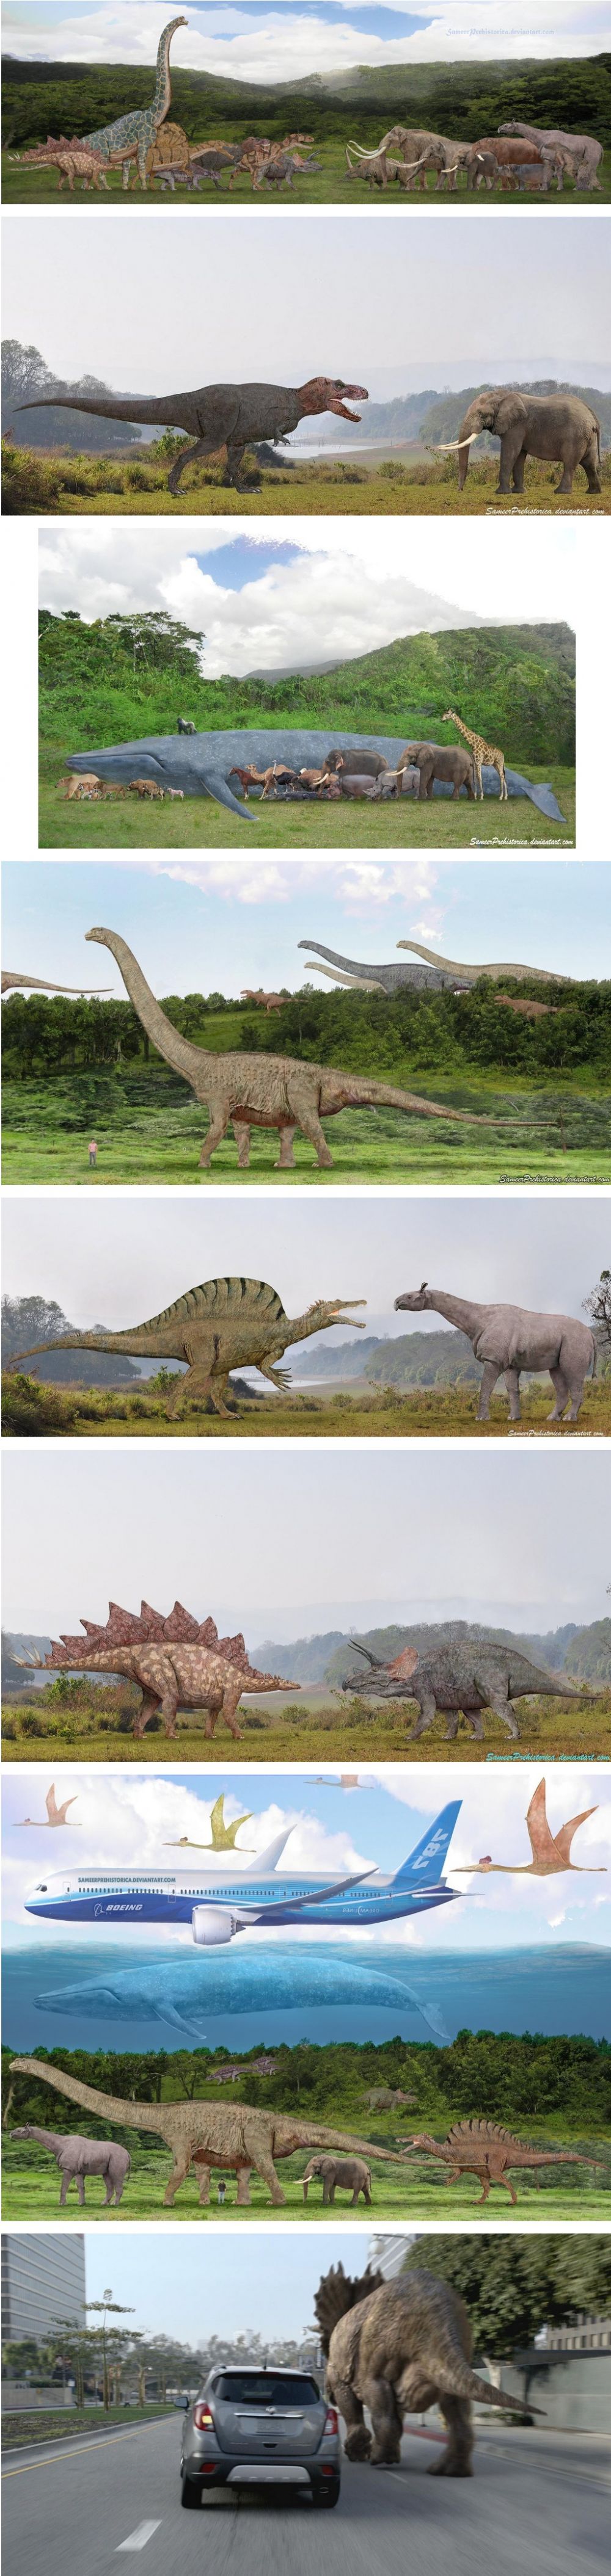 공룡 현재동물과 비교.jpg